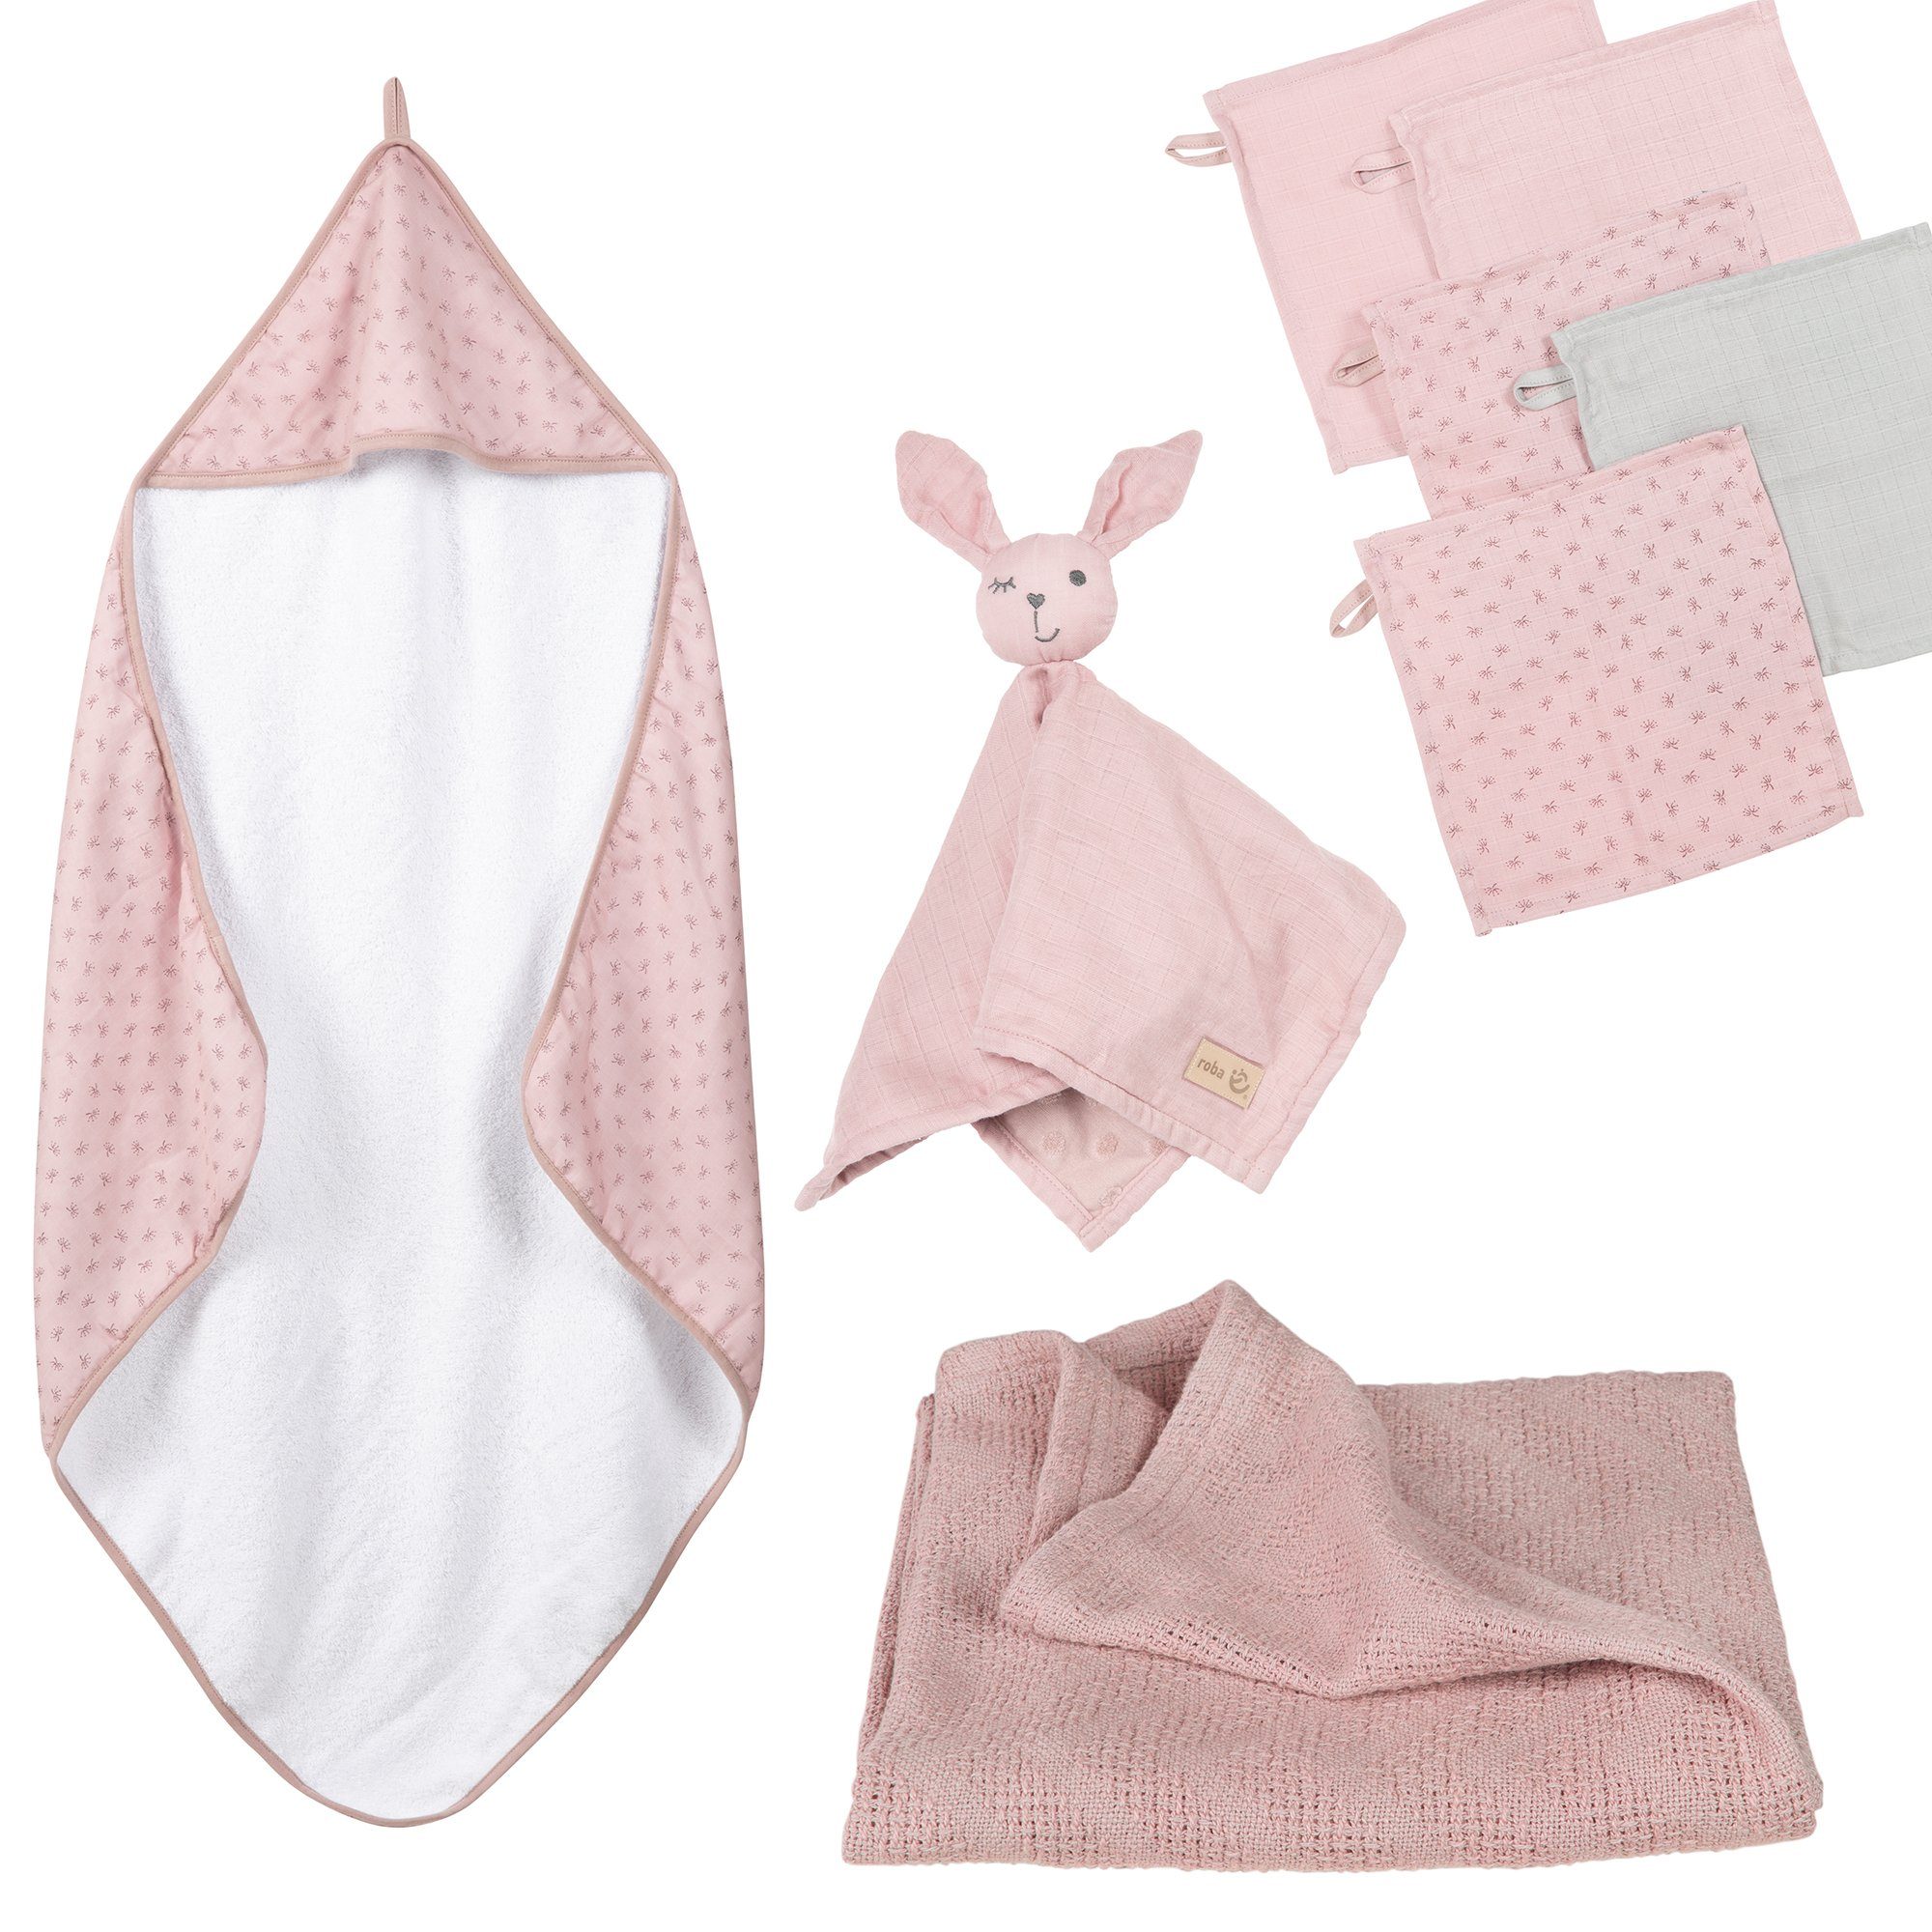 roba® Neugeborenen-Geschenkset Lil Planet Handtuch, Waschlappen, Schmusetuch & Decke rosa/mauve